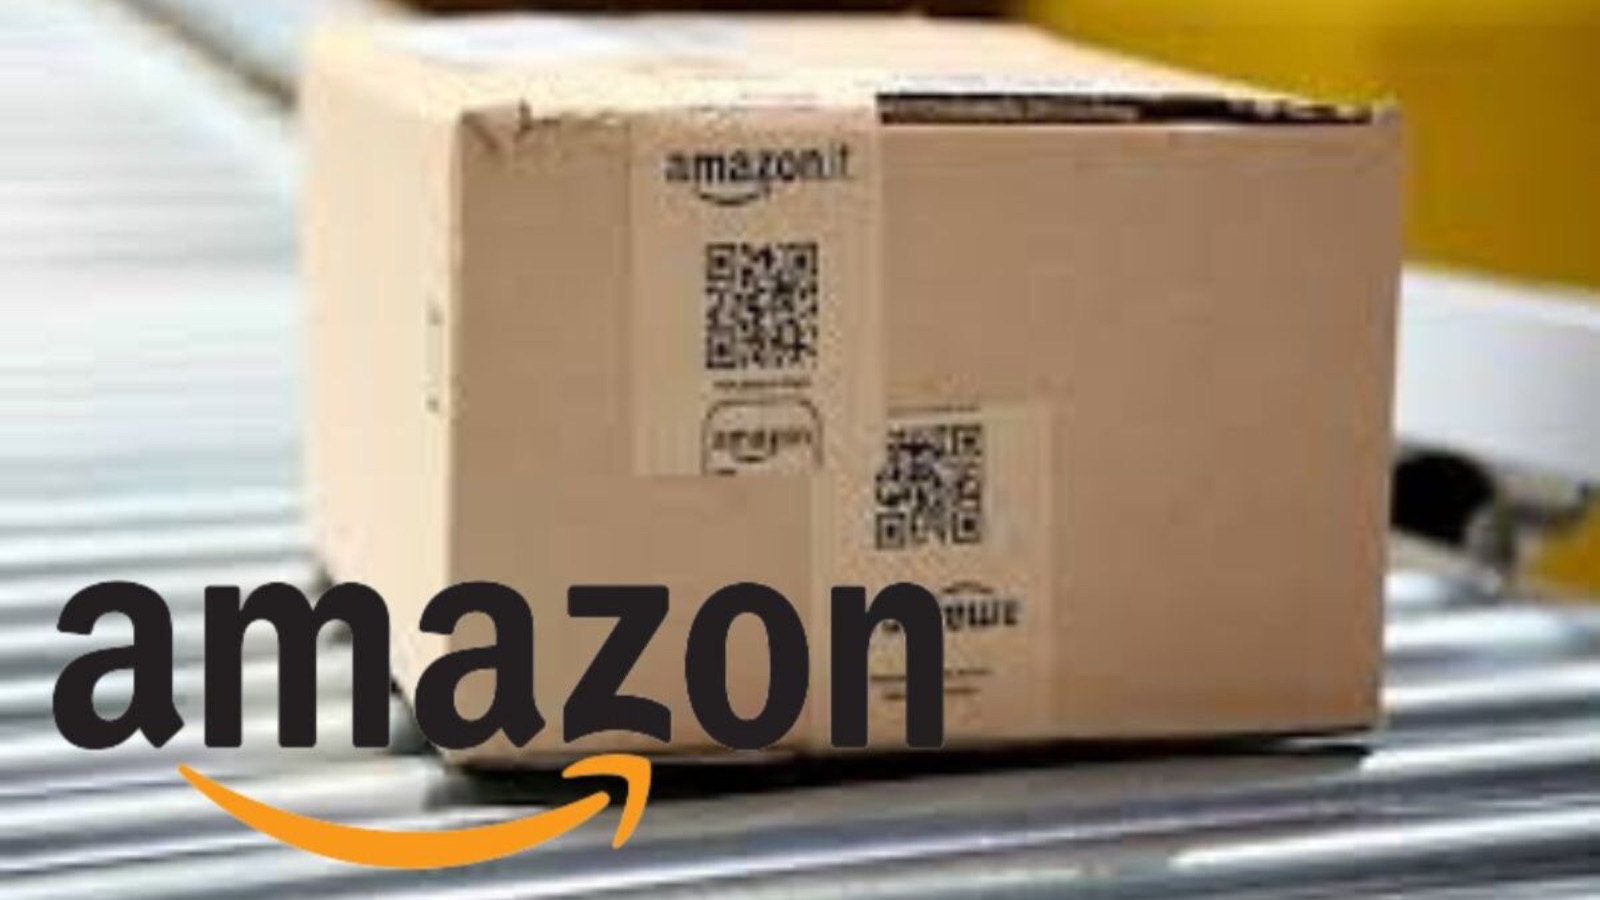 Amazon offre GRATIS tanti smartphone e computer oggi 